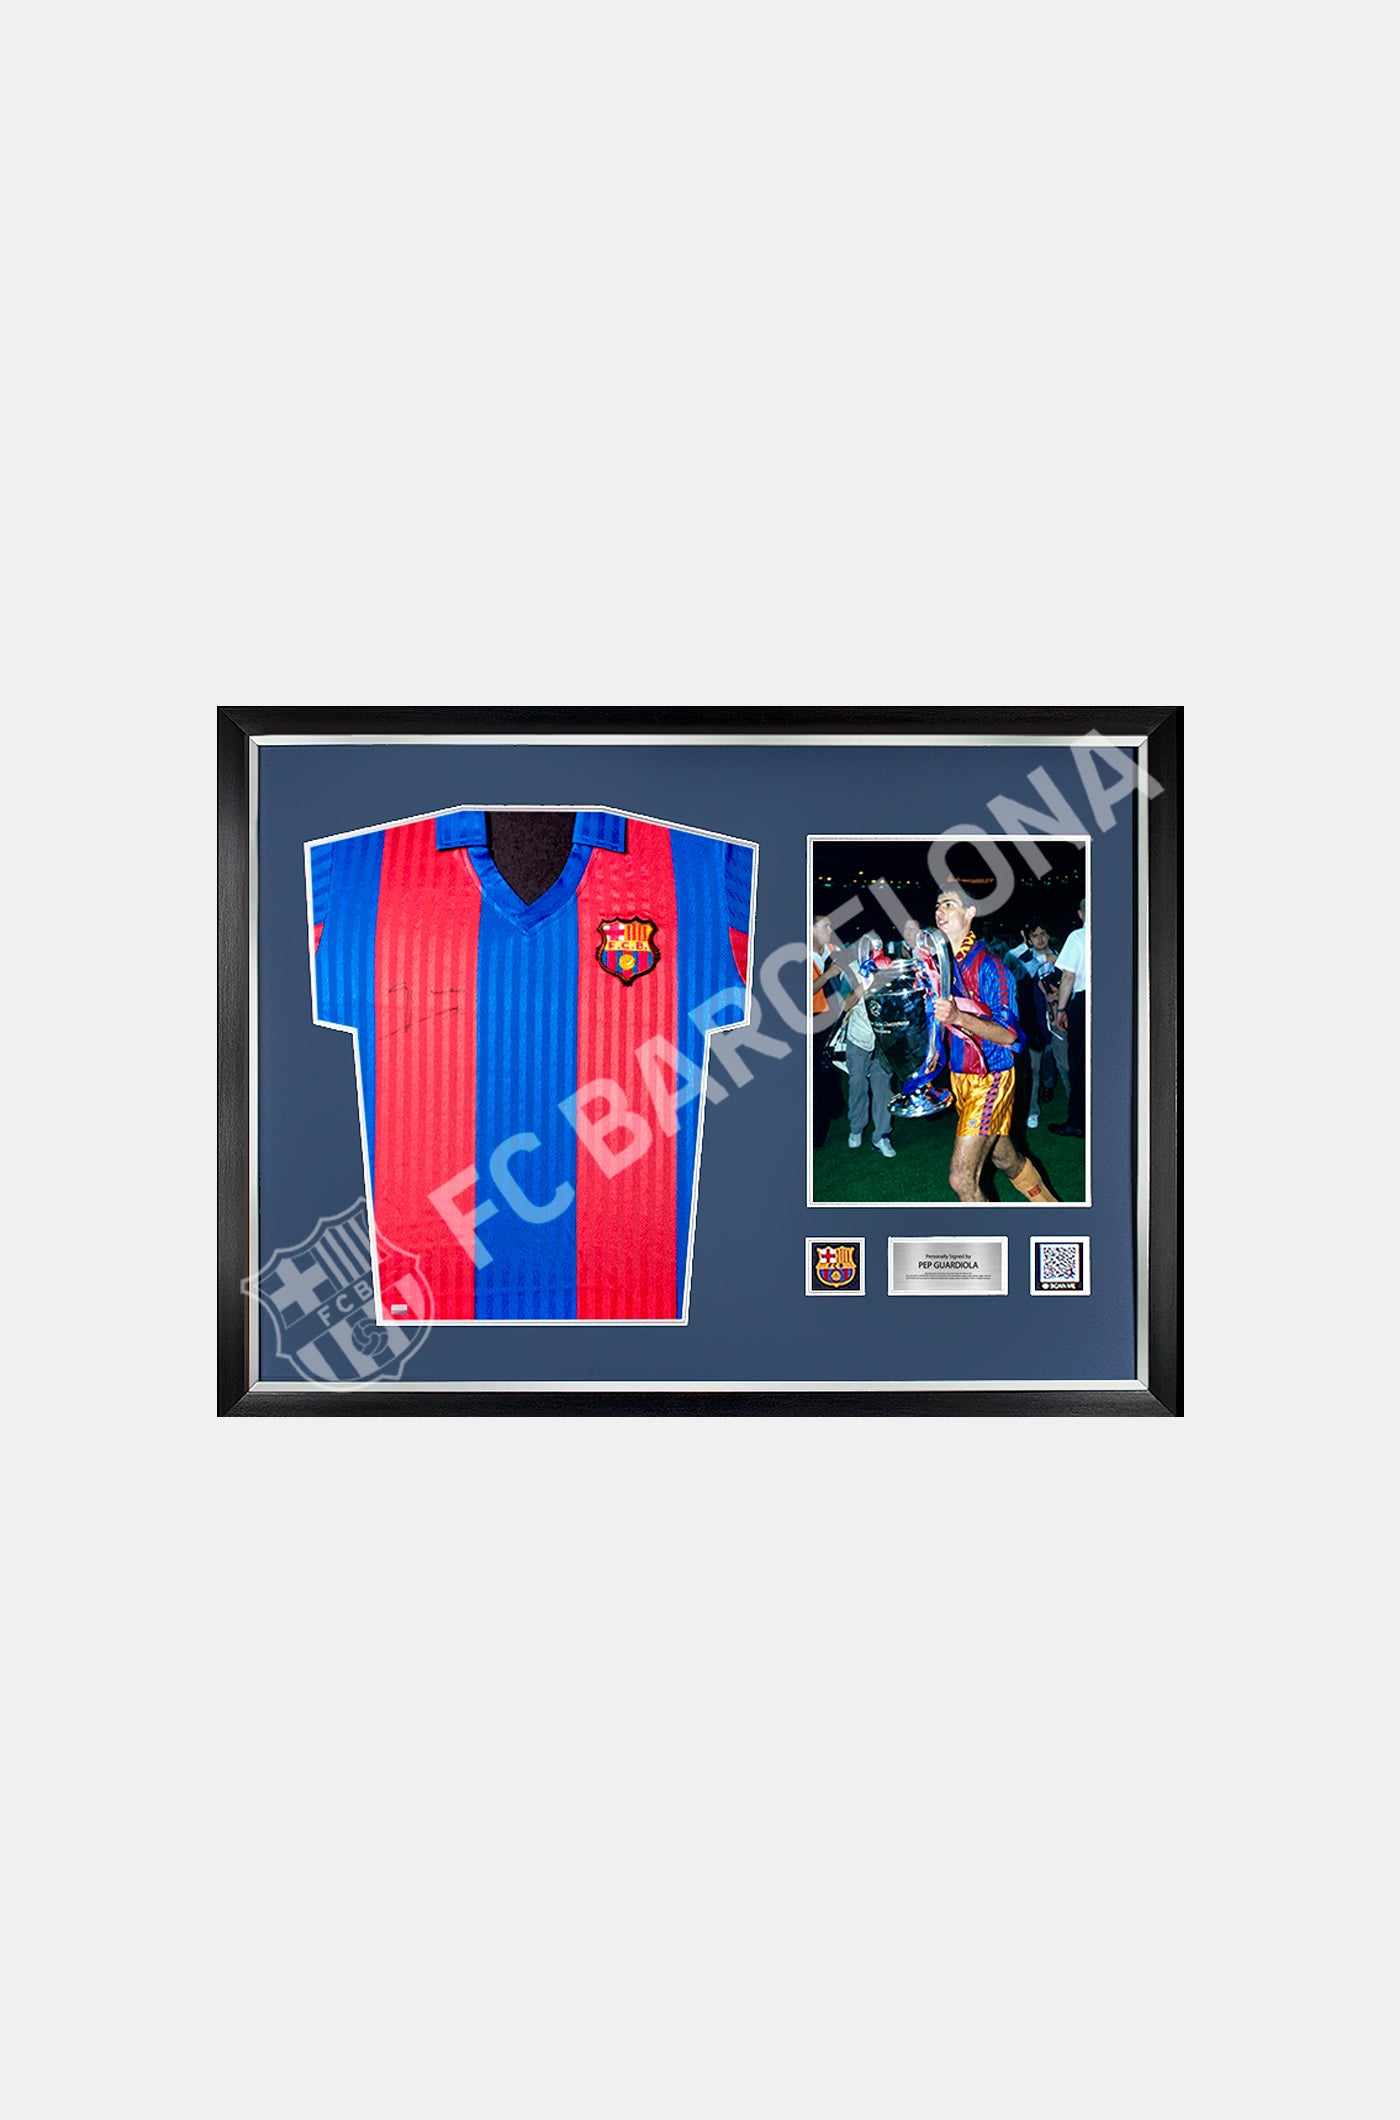 GUARDIOLA | Camiseta oficial del FC Barcelona 1992 firmada y enmarcada por Pep Guardiola 